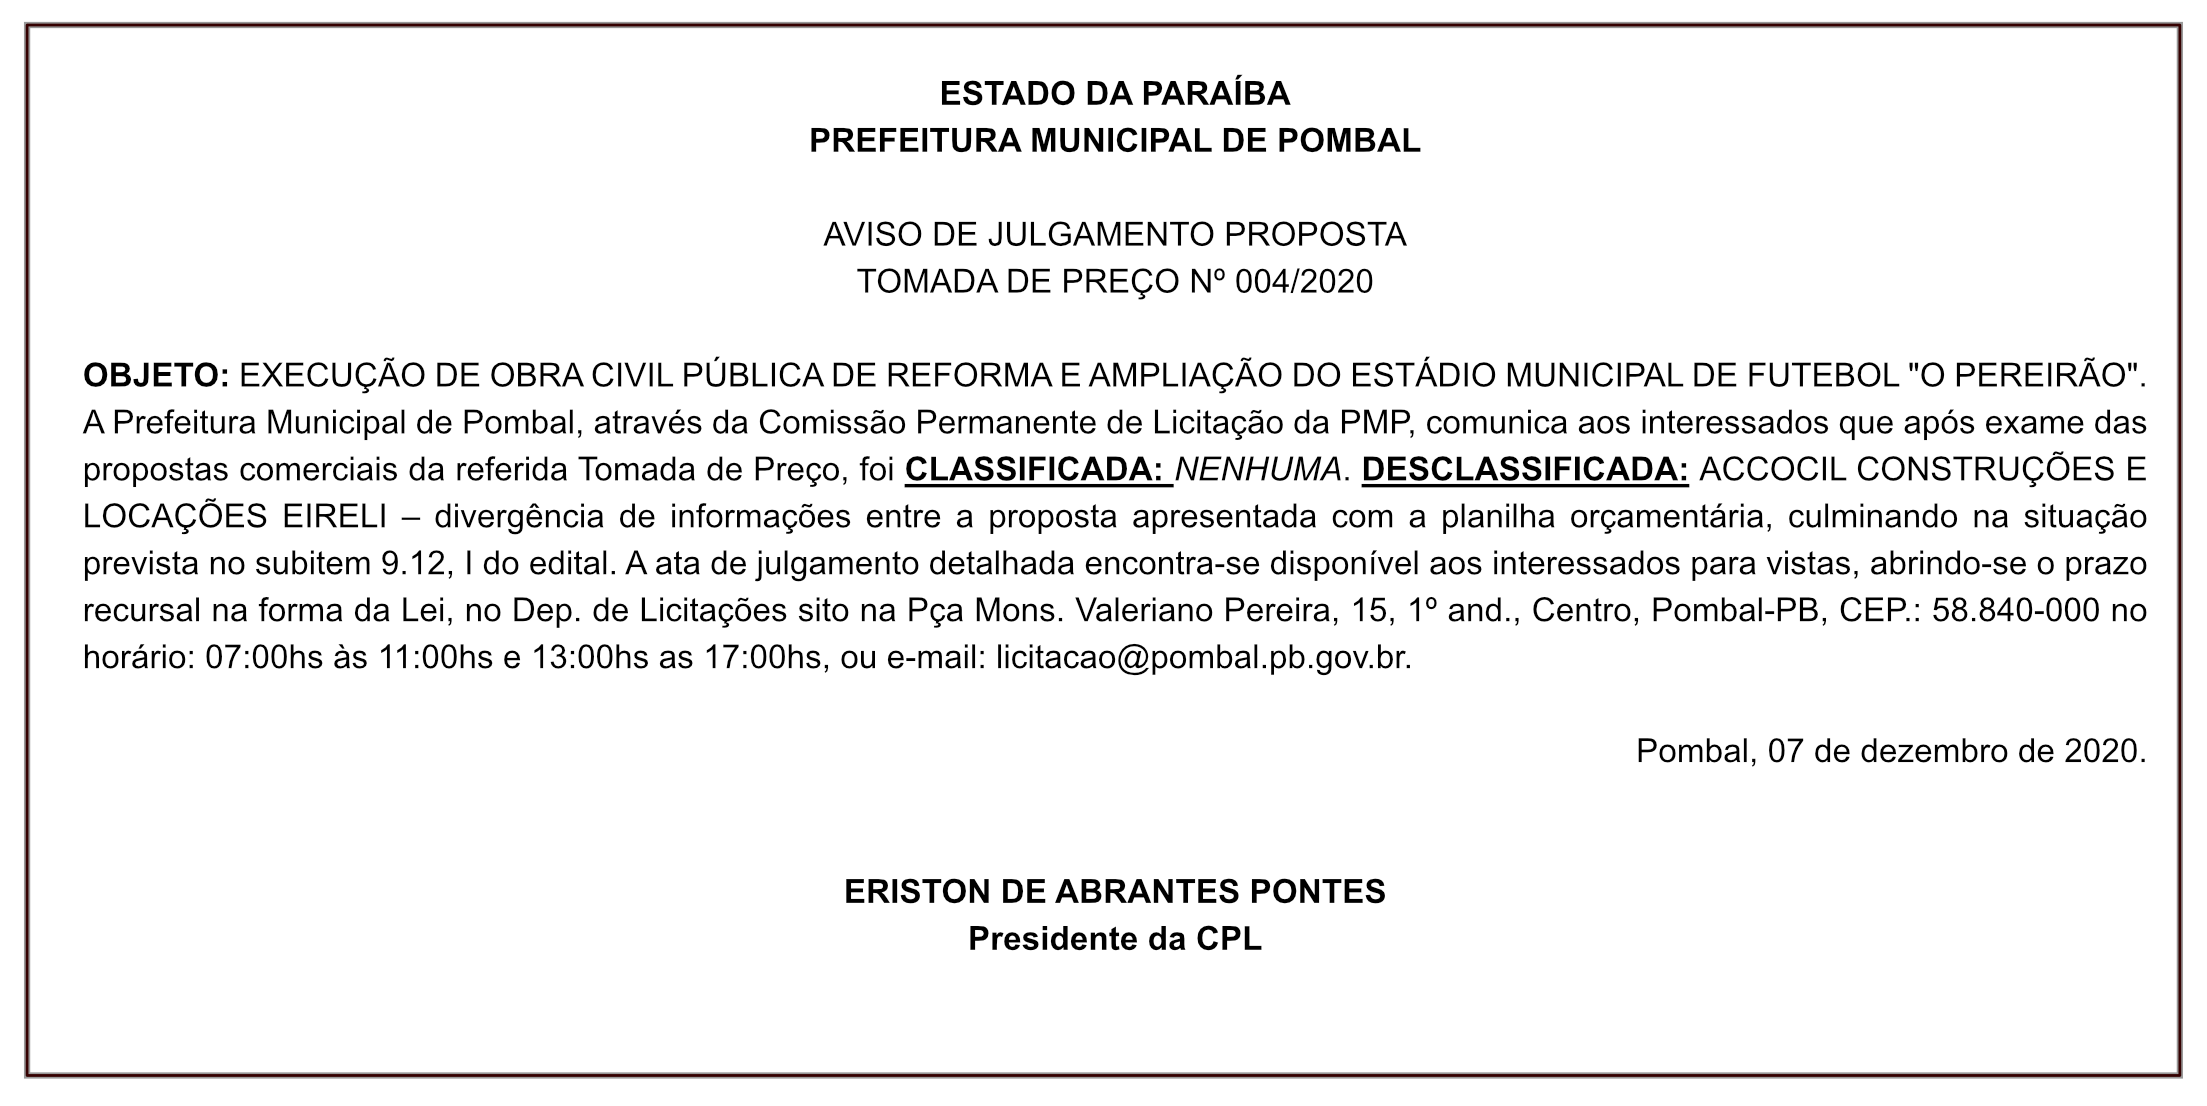 PREFEITURA MUNICIPAL DE POMBAL – AVISO DE JULGAMENTO – PROPOSTA – TOMADA DE PREÇO Nº 004/2020